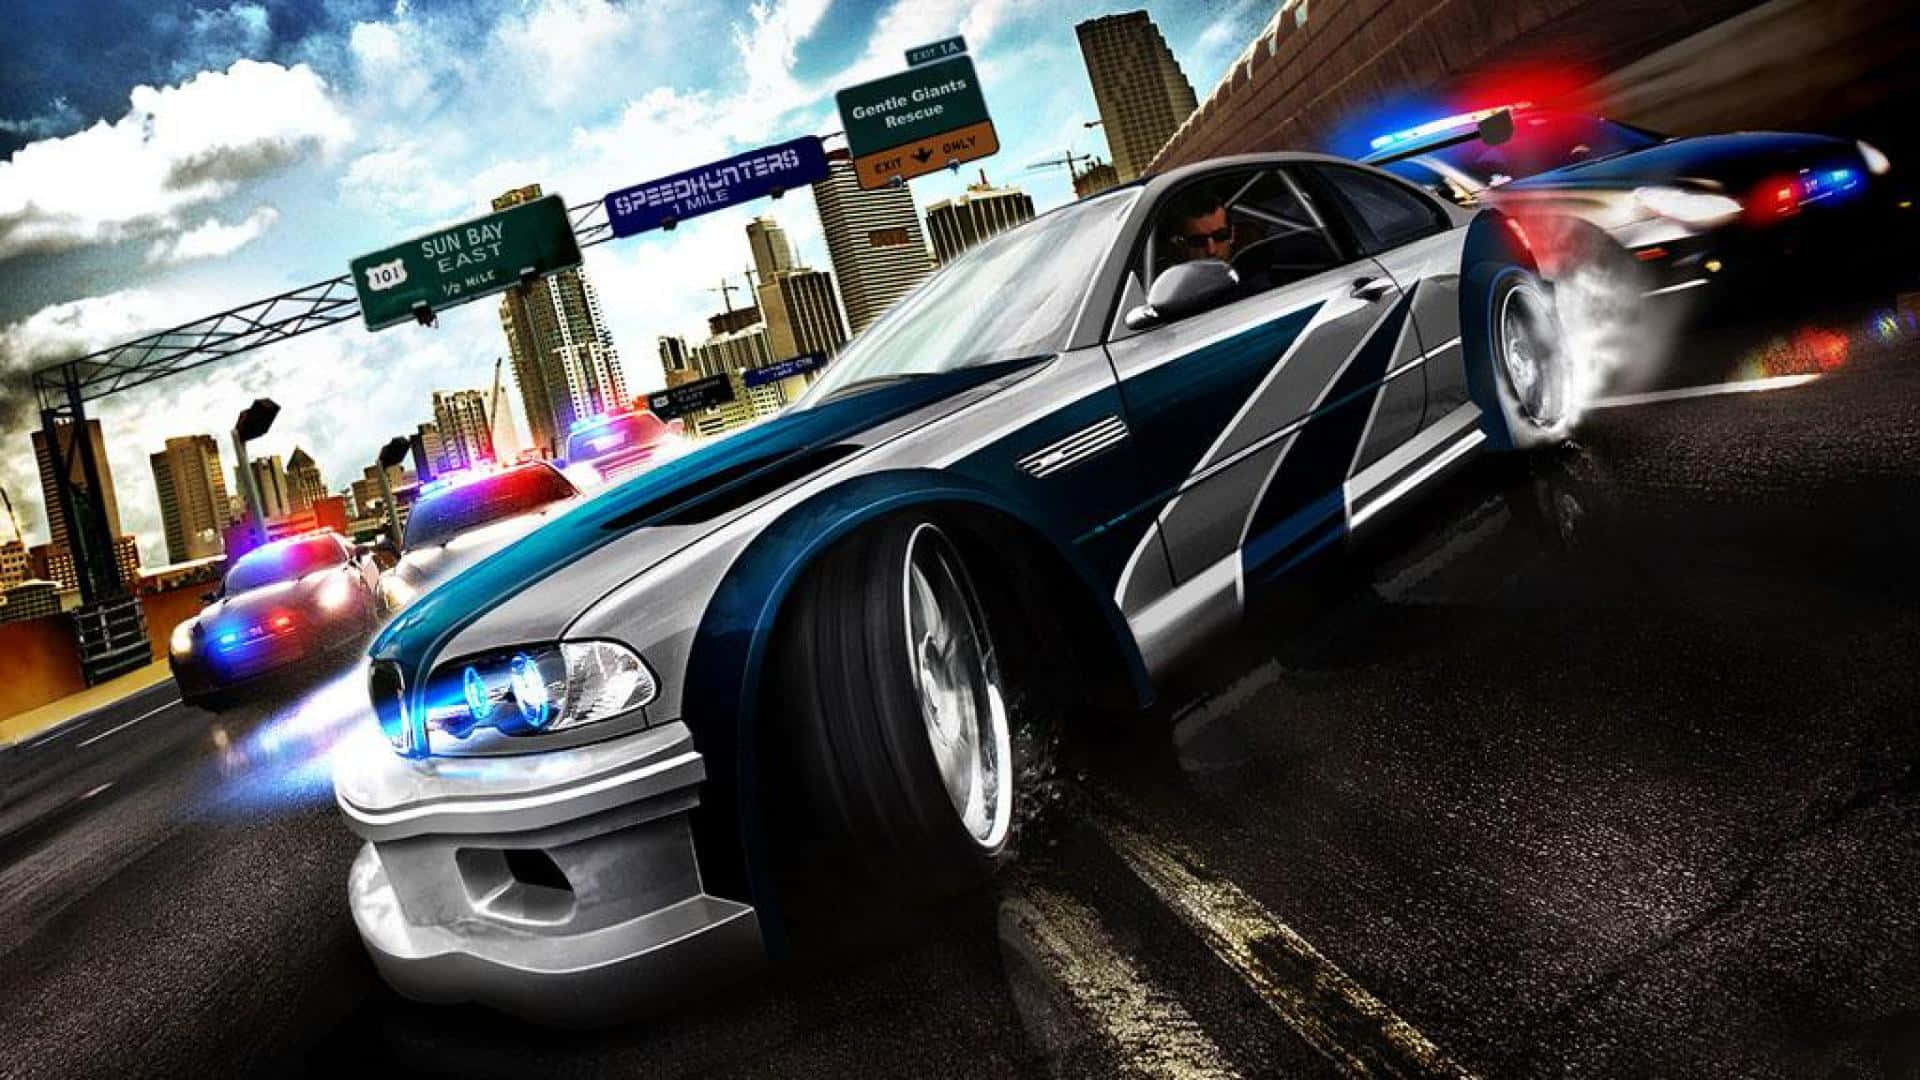 2005videospelet Mest Efterfrågade Need For Speed Pc-poster. Wallpaper